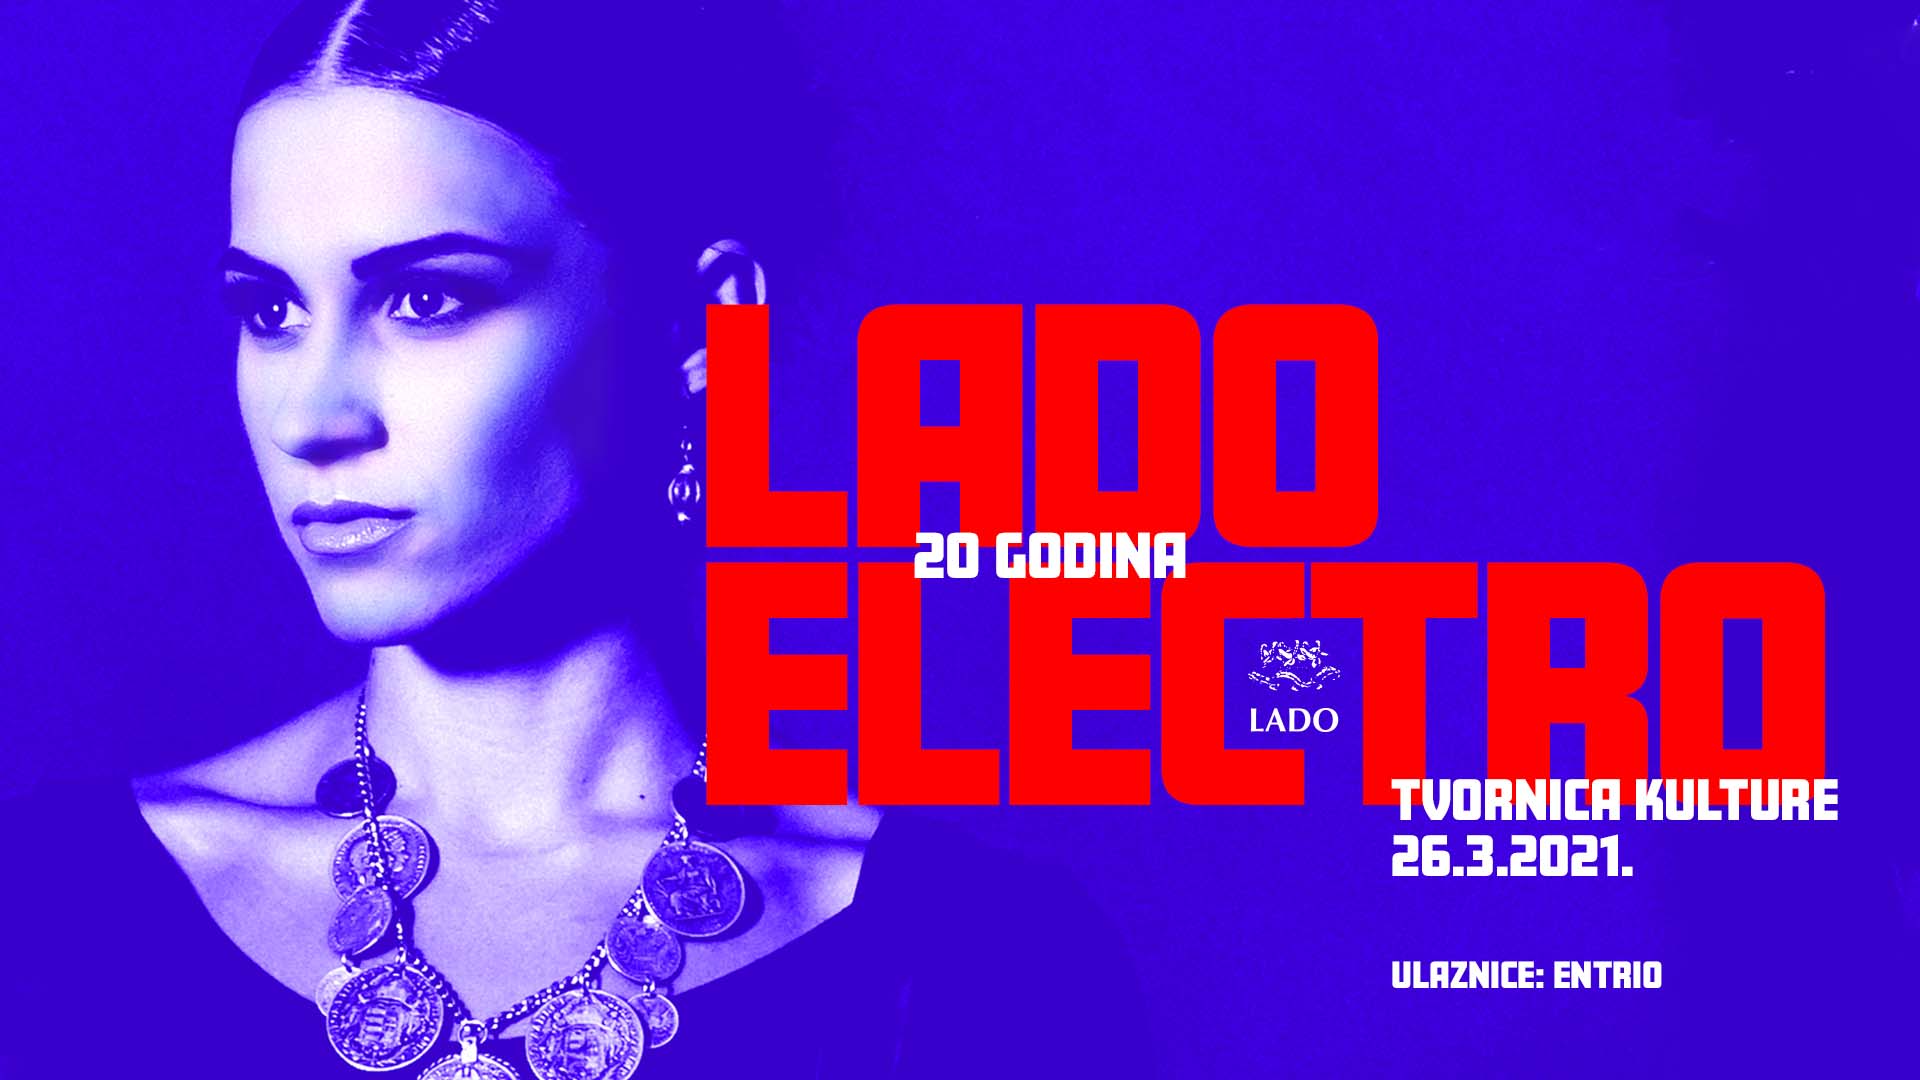 Pozivamo vas na  veliki koncert LADO Electra 26. ožujka u Tvornici kulture